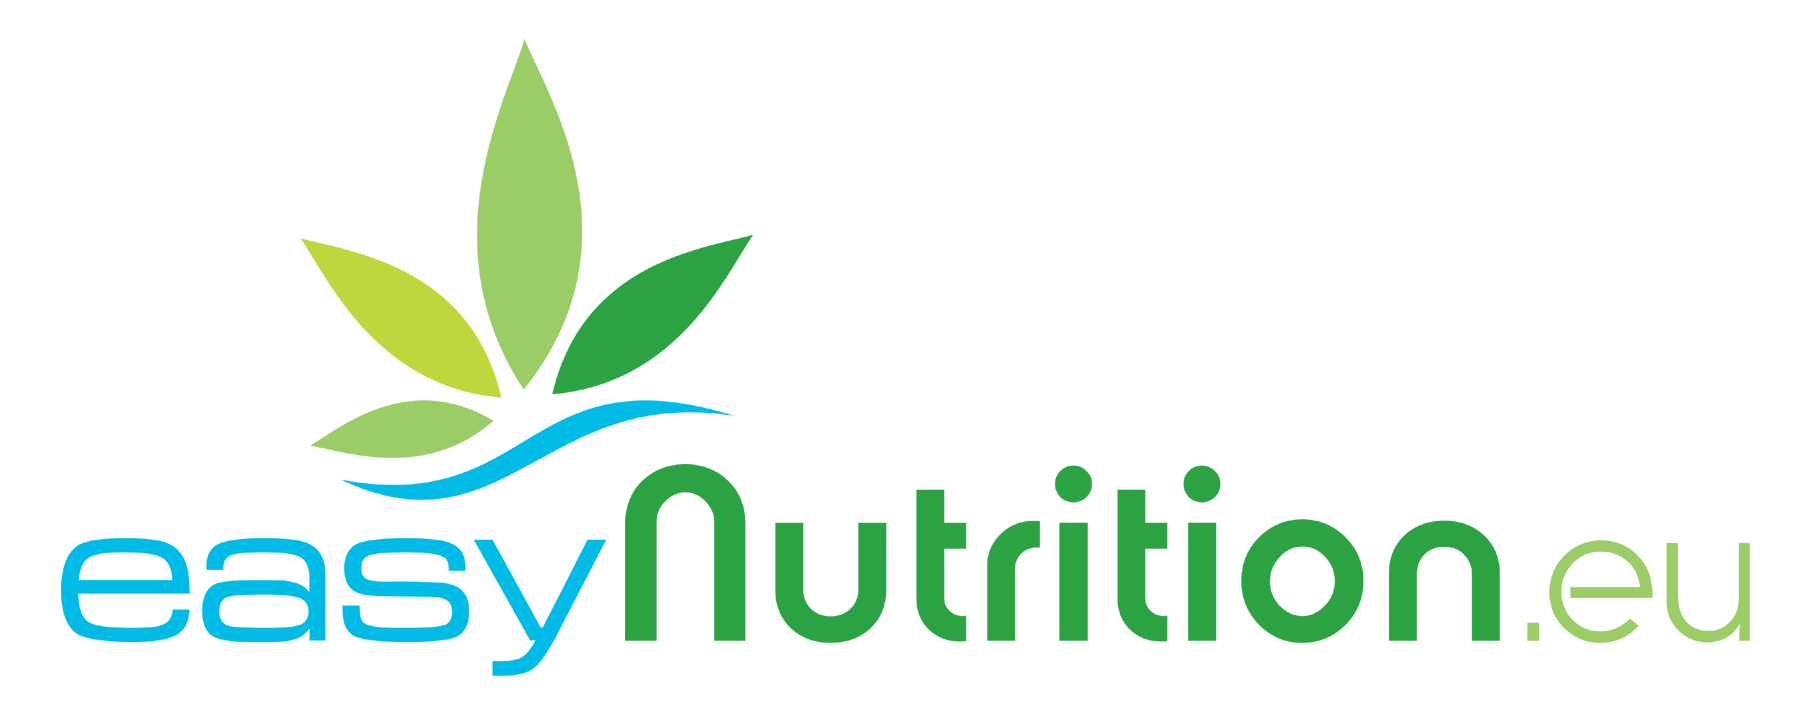 Complments alimentaires bio, naturels et nutritionnels | Easy Nutrition